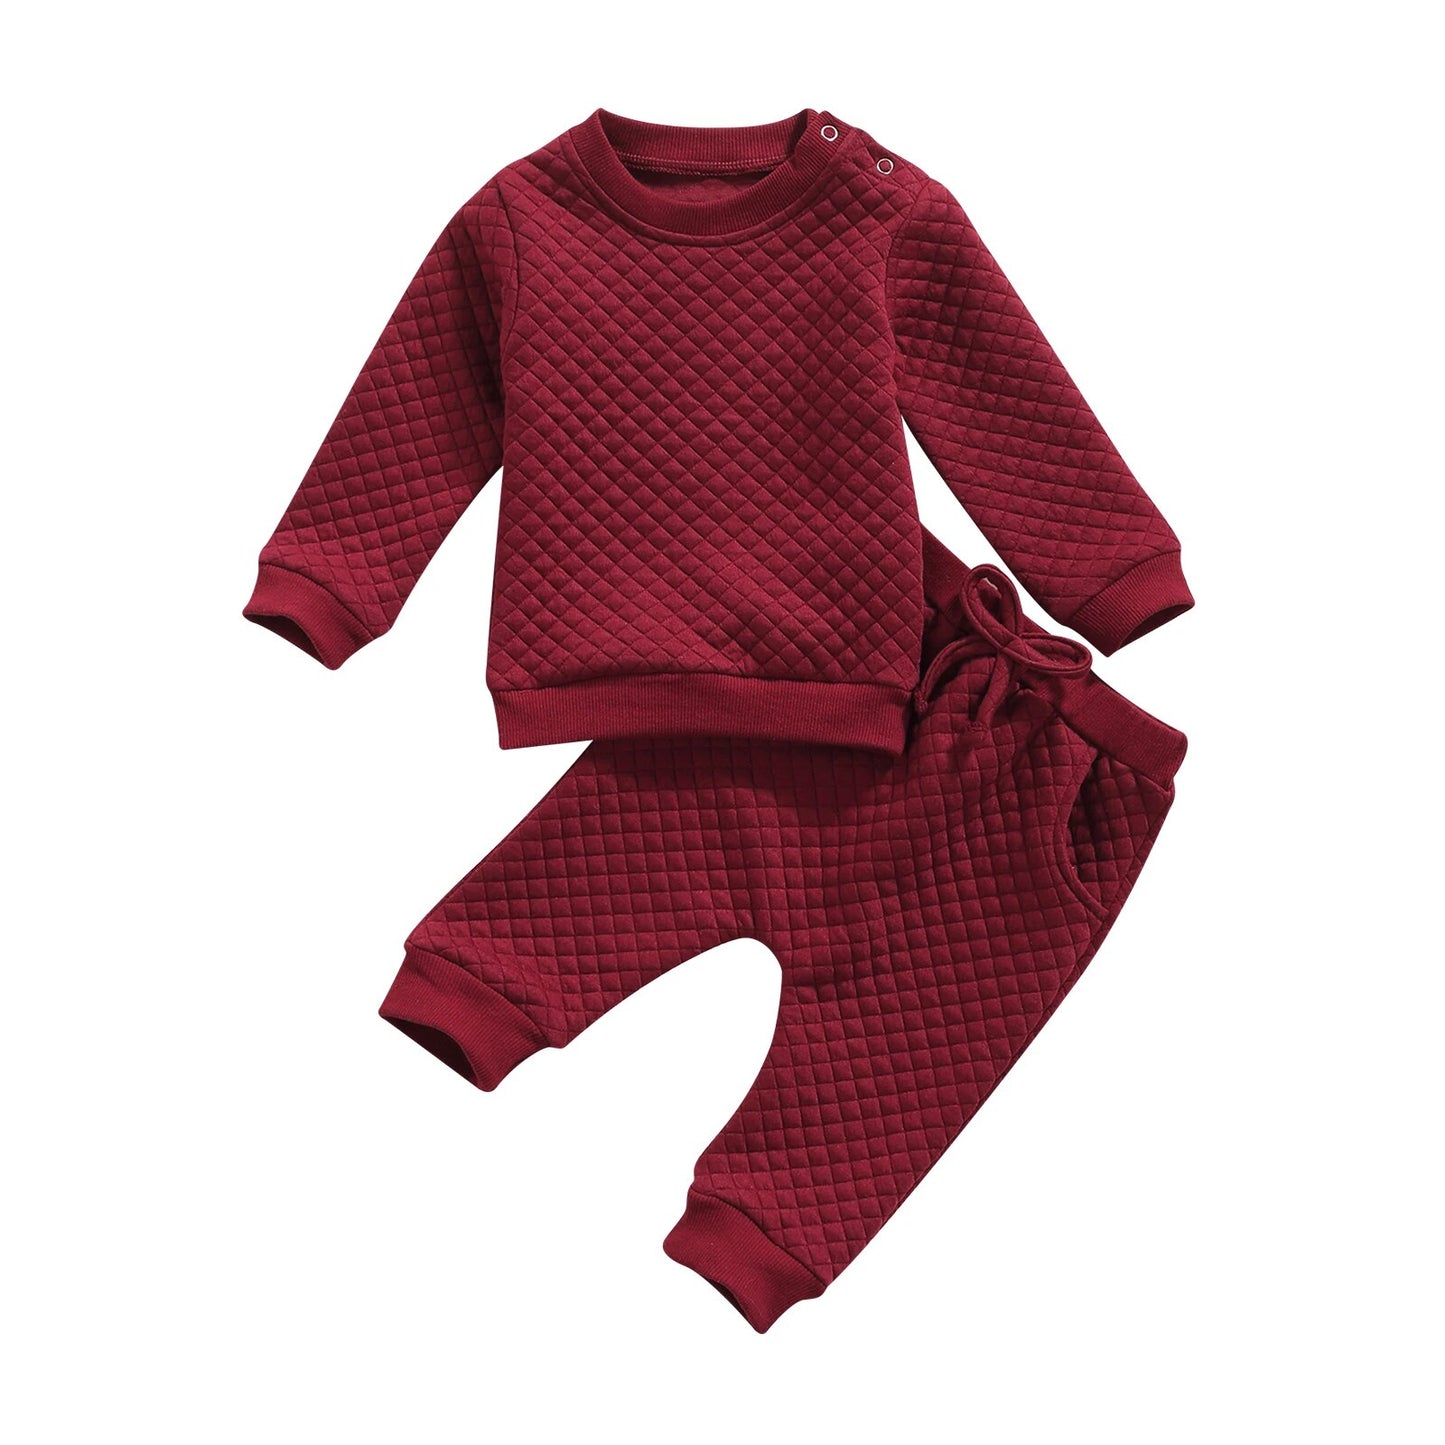 Kleinkind-Herbst-Winter-Kleidung für Jungen und Mädchen von 0–24 Monaten